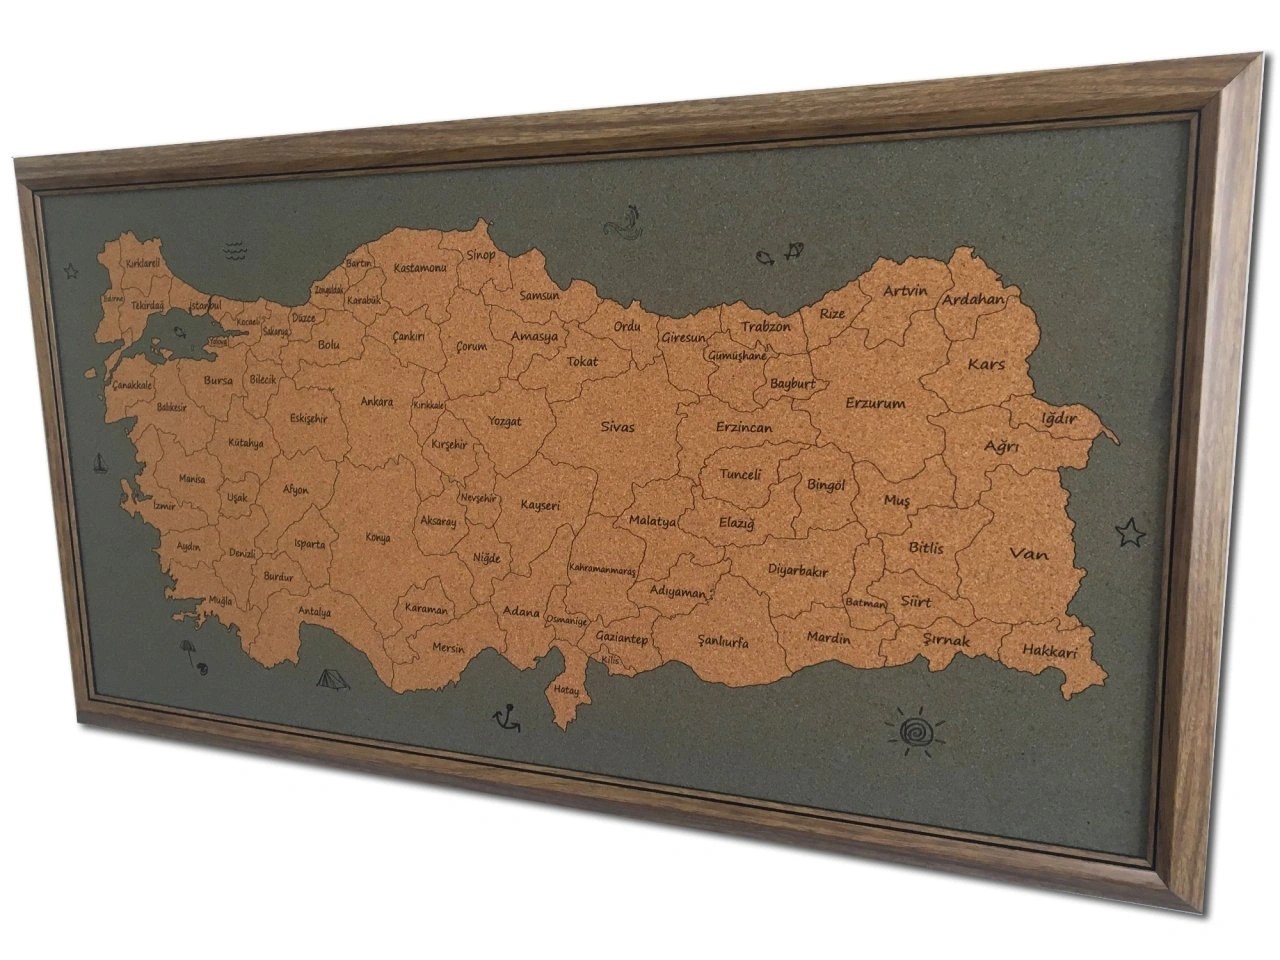 108 - Mantar Türkiye Haritası (Mavi)